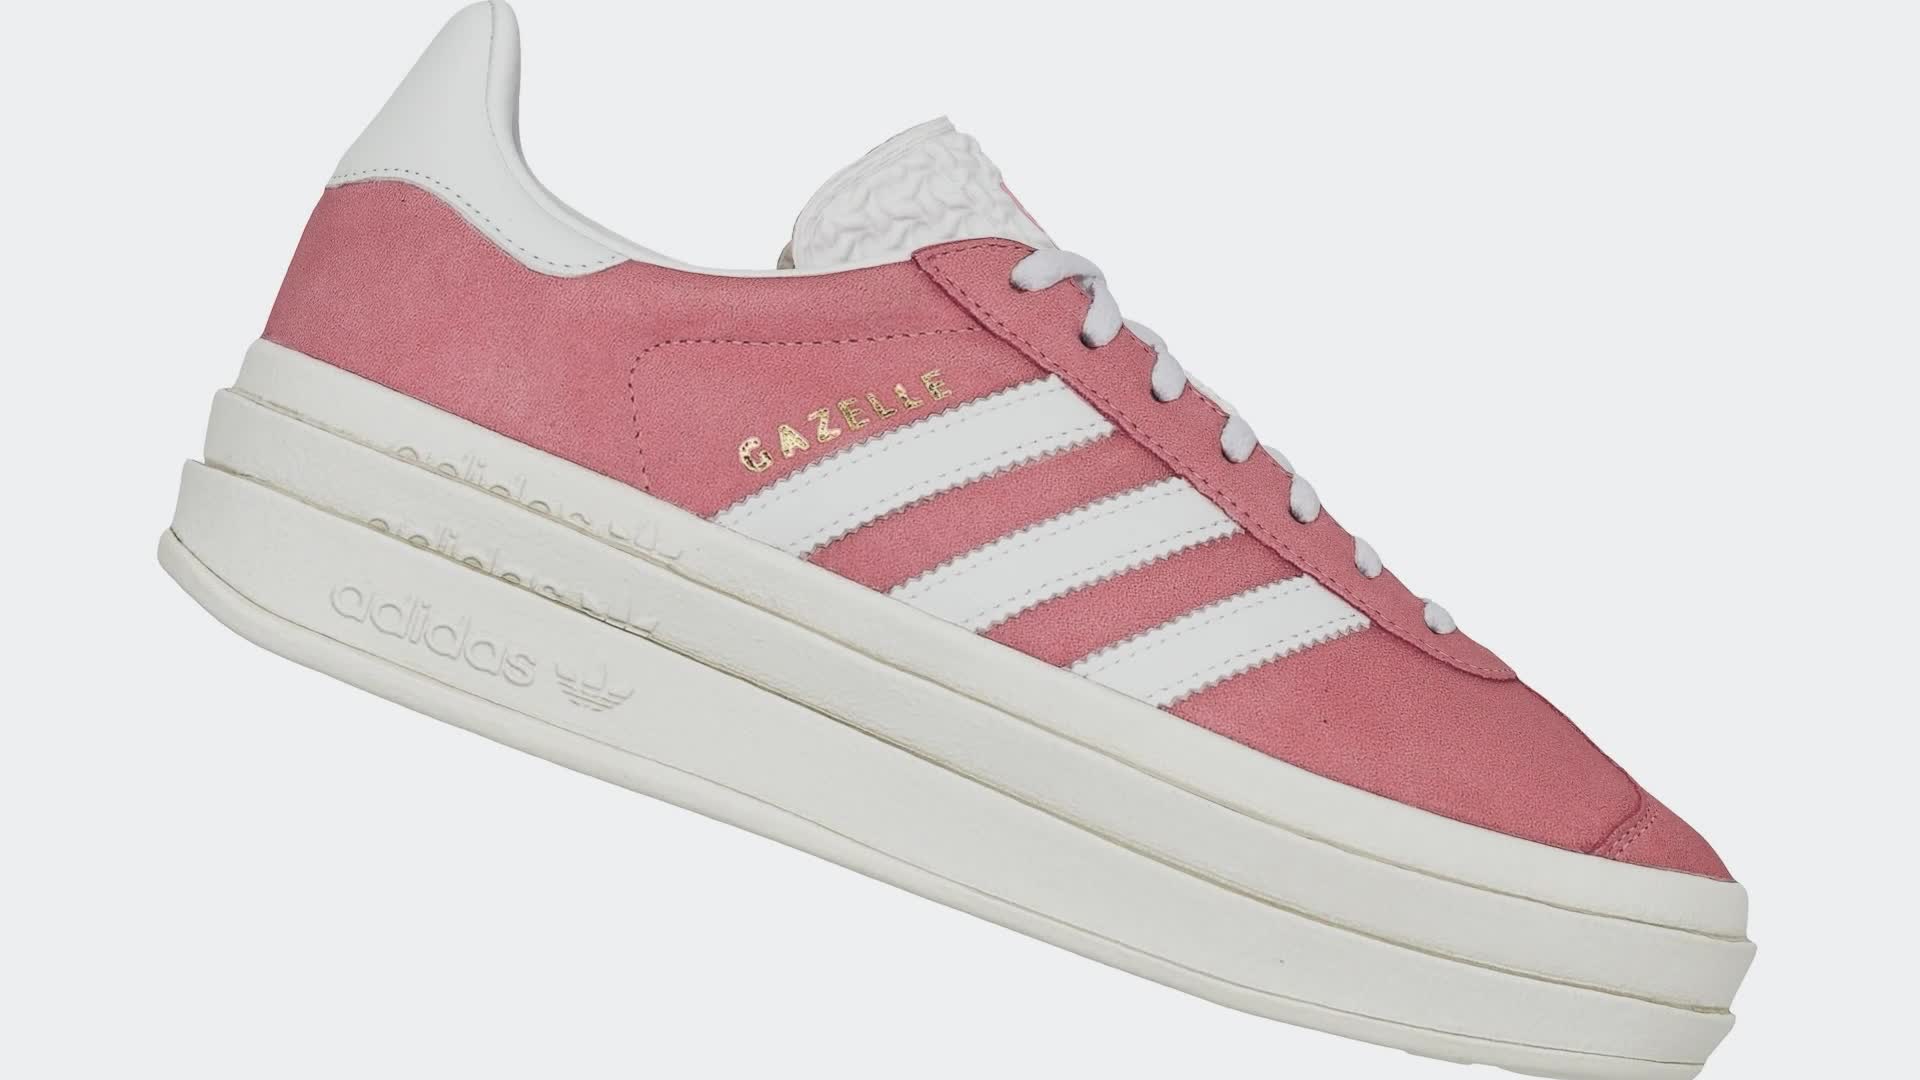 SambaRose Adidas Hot pink and glitter … like New